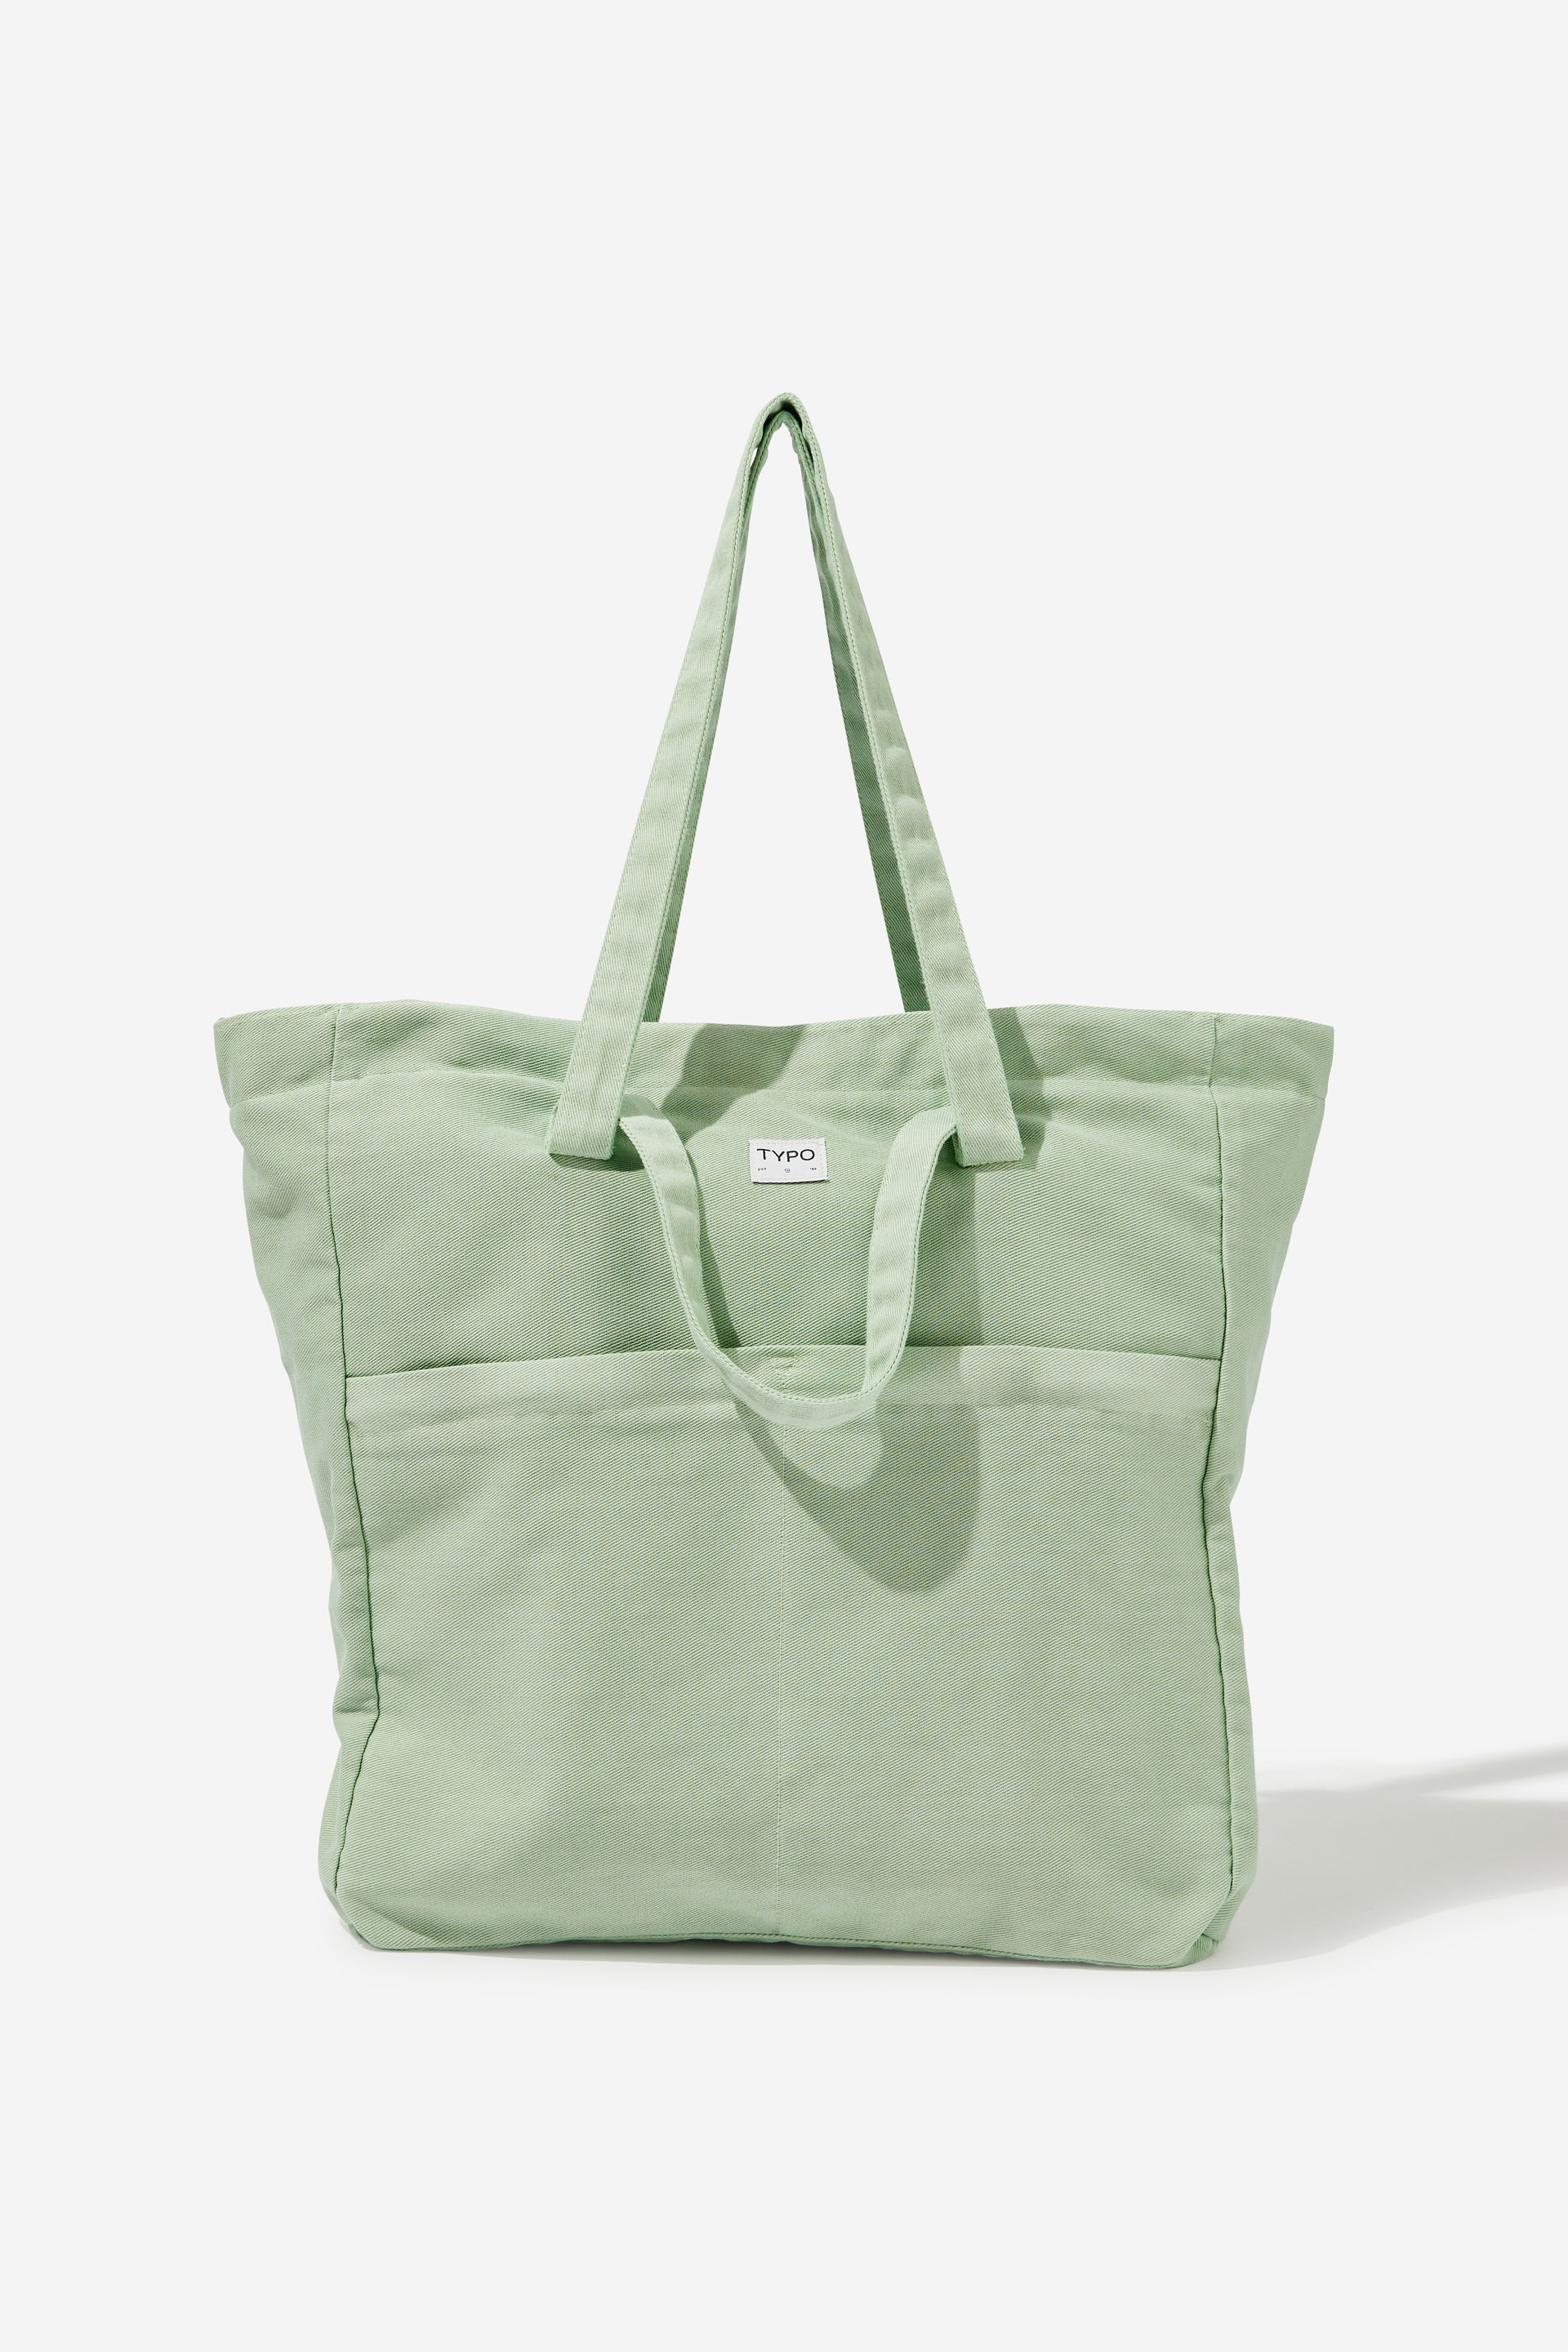 Typo - Wellness Tote Bag - Smoke green